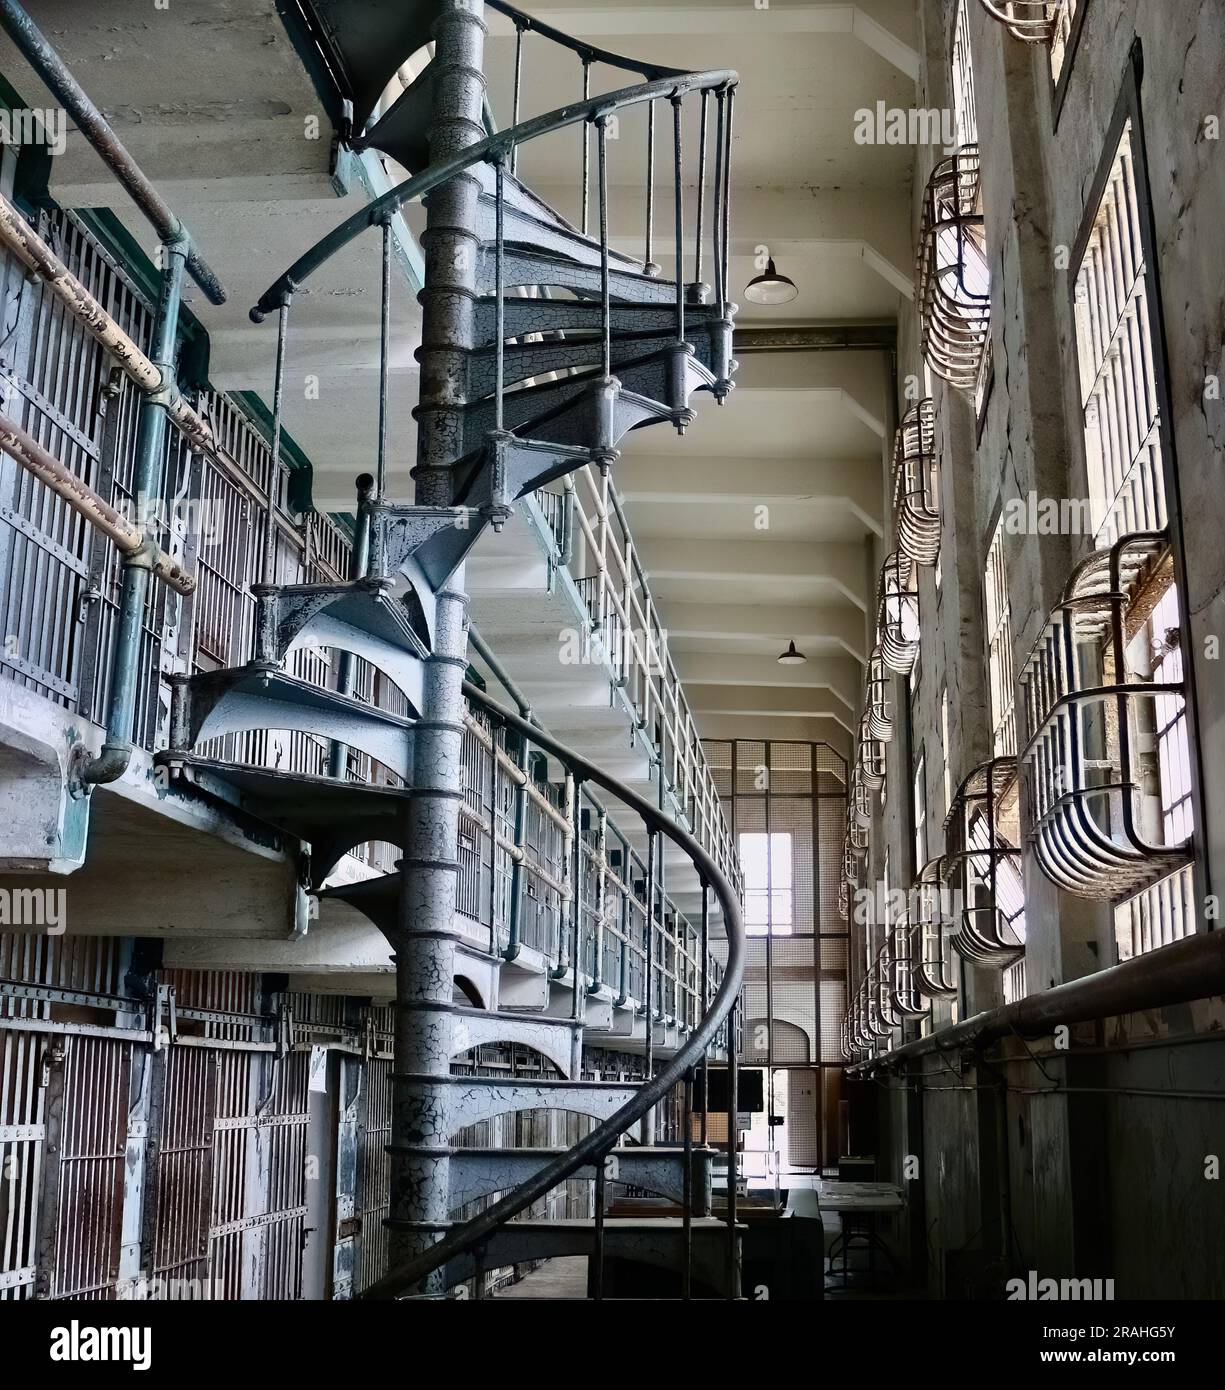 All'interno del penitenziario federale di Alcatraz con una scala a chiocciola per i corridoi con celle carcerarie Alcatraz Island San Francisco California USA Foto Stock